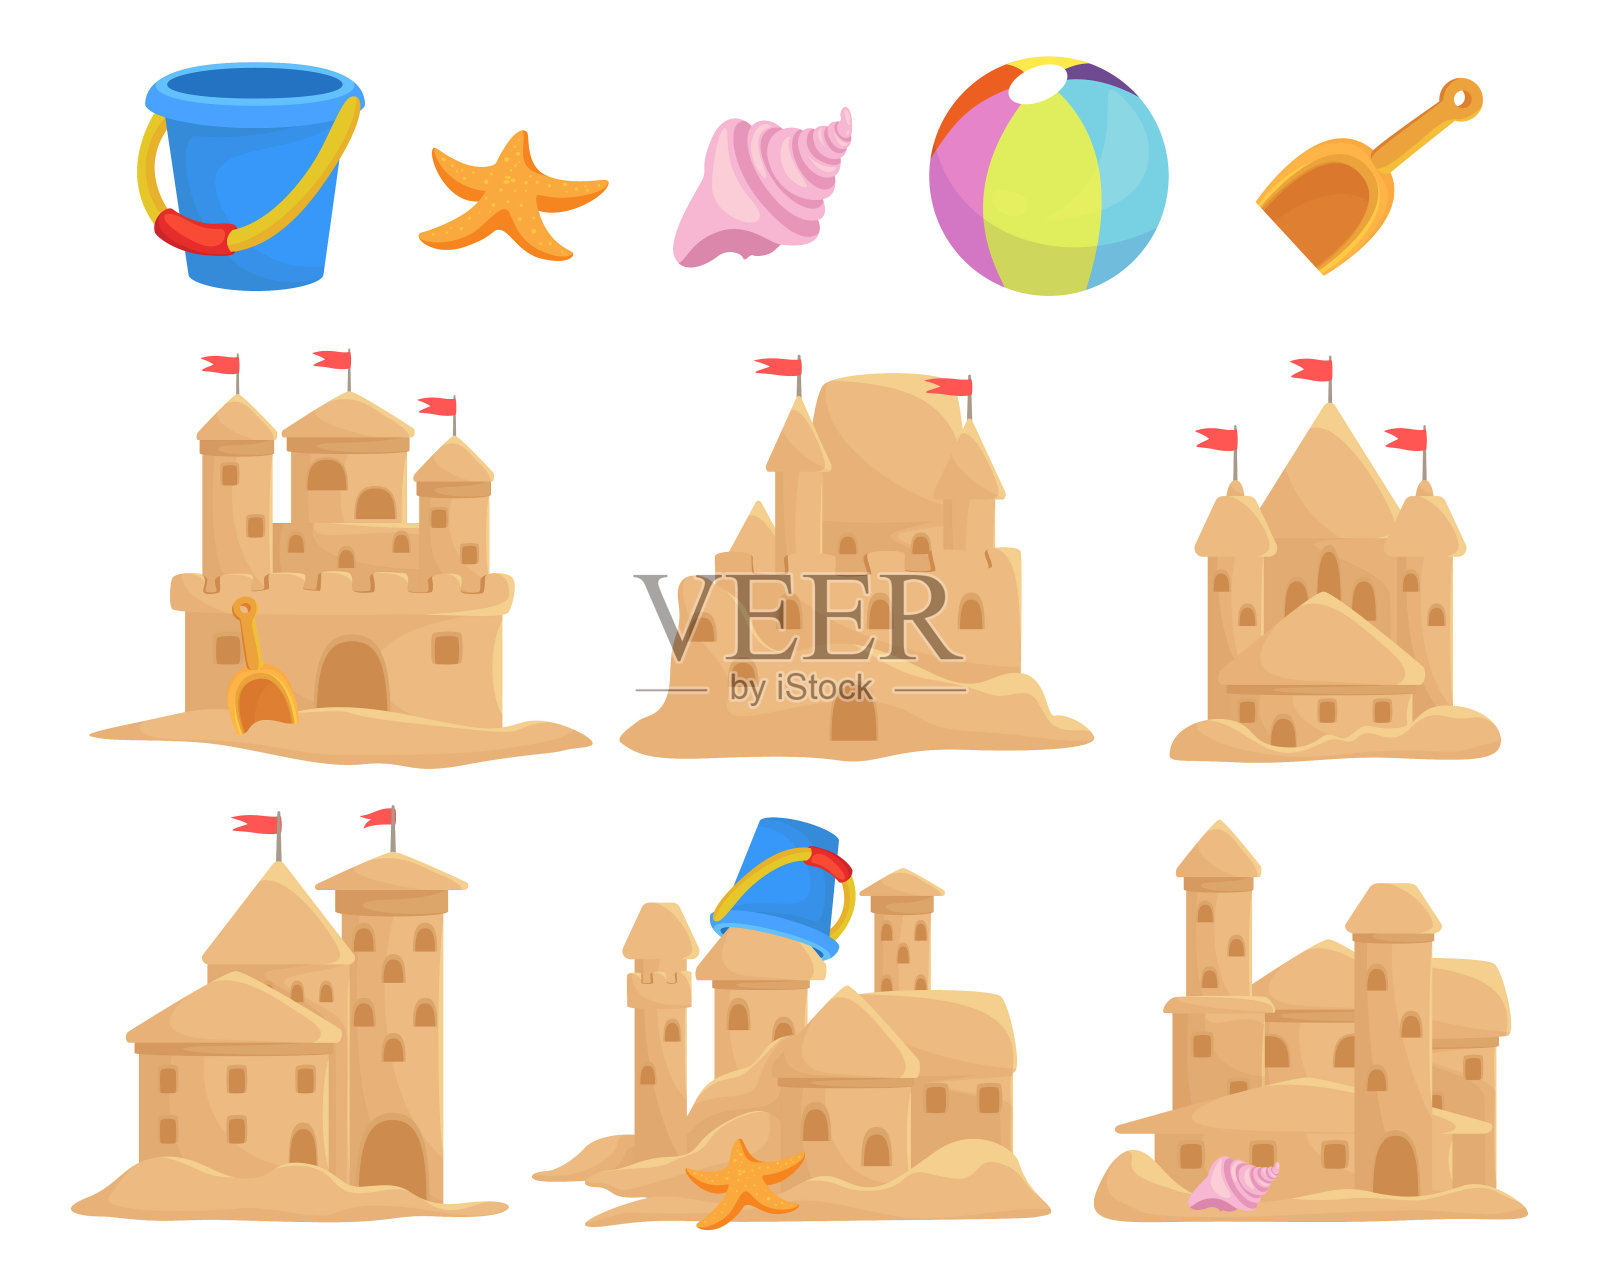 沙堡套装和儿童玩具桶，海贝，勺子，海星，球。沙宫、雕塑、塔。插画图片素材